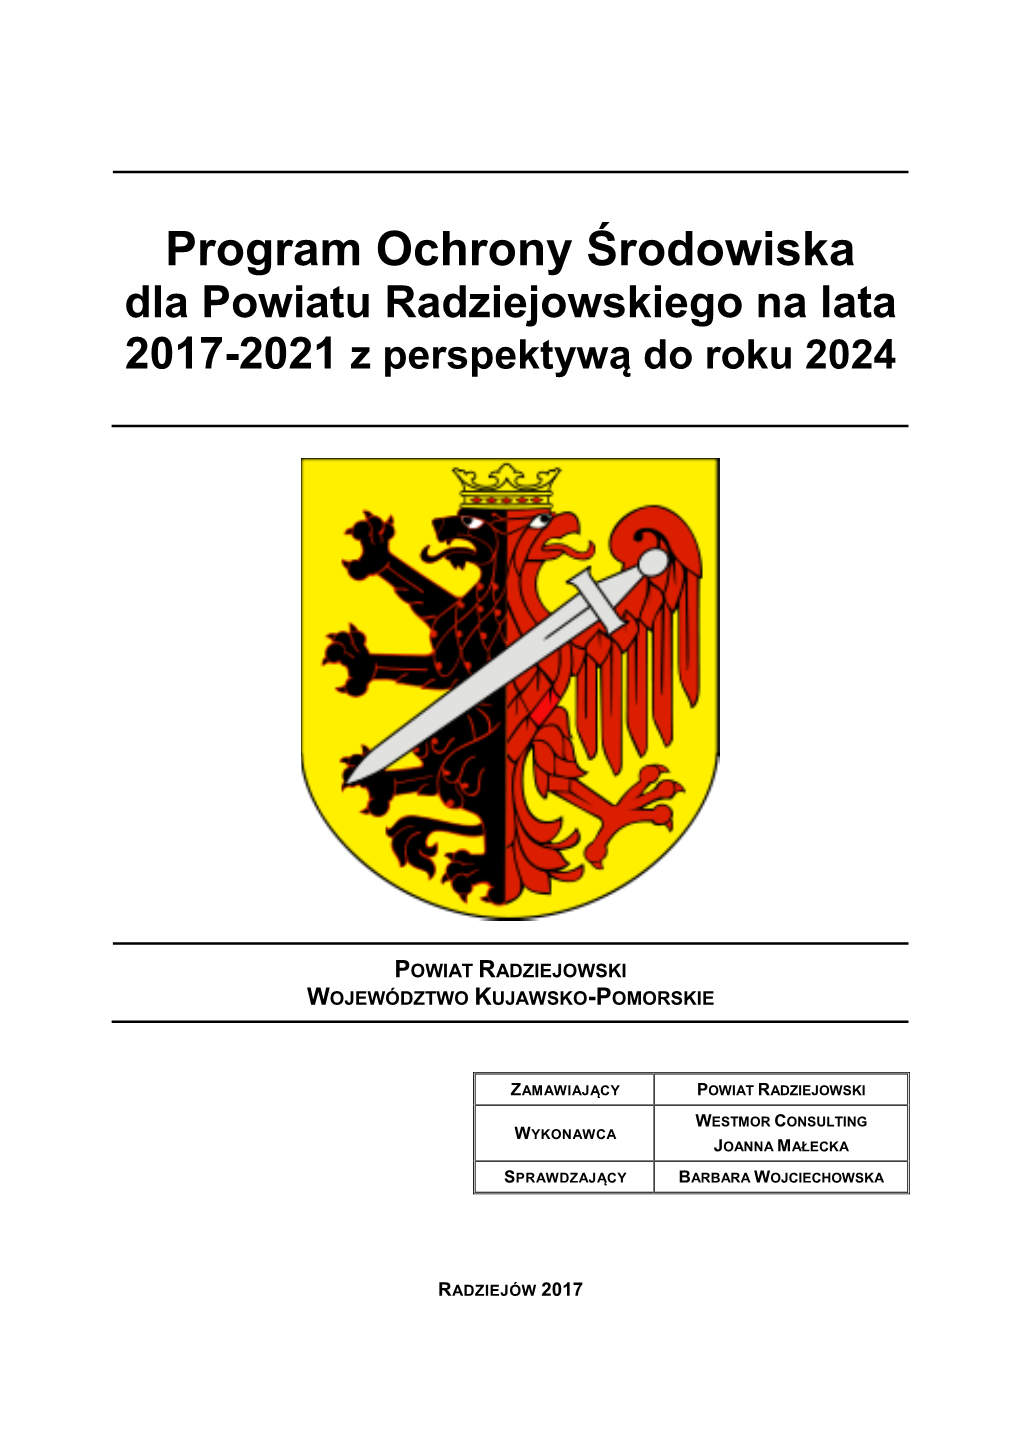 Program Ochrony Środowiska Dla Powiatu Radziejowskiego Na Lata 2017-2021 Z Perspektywą Do Roku 2024